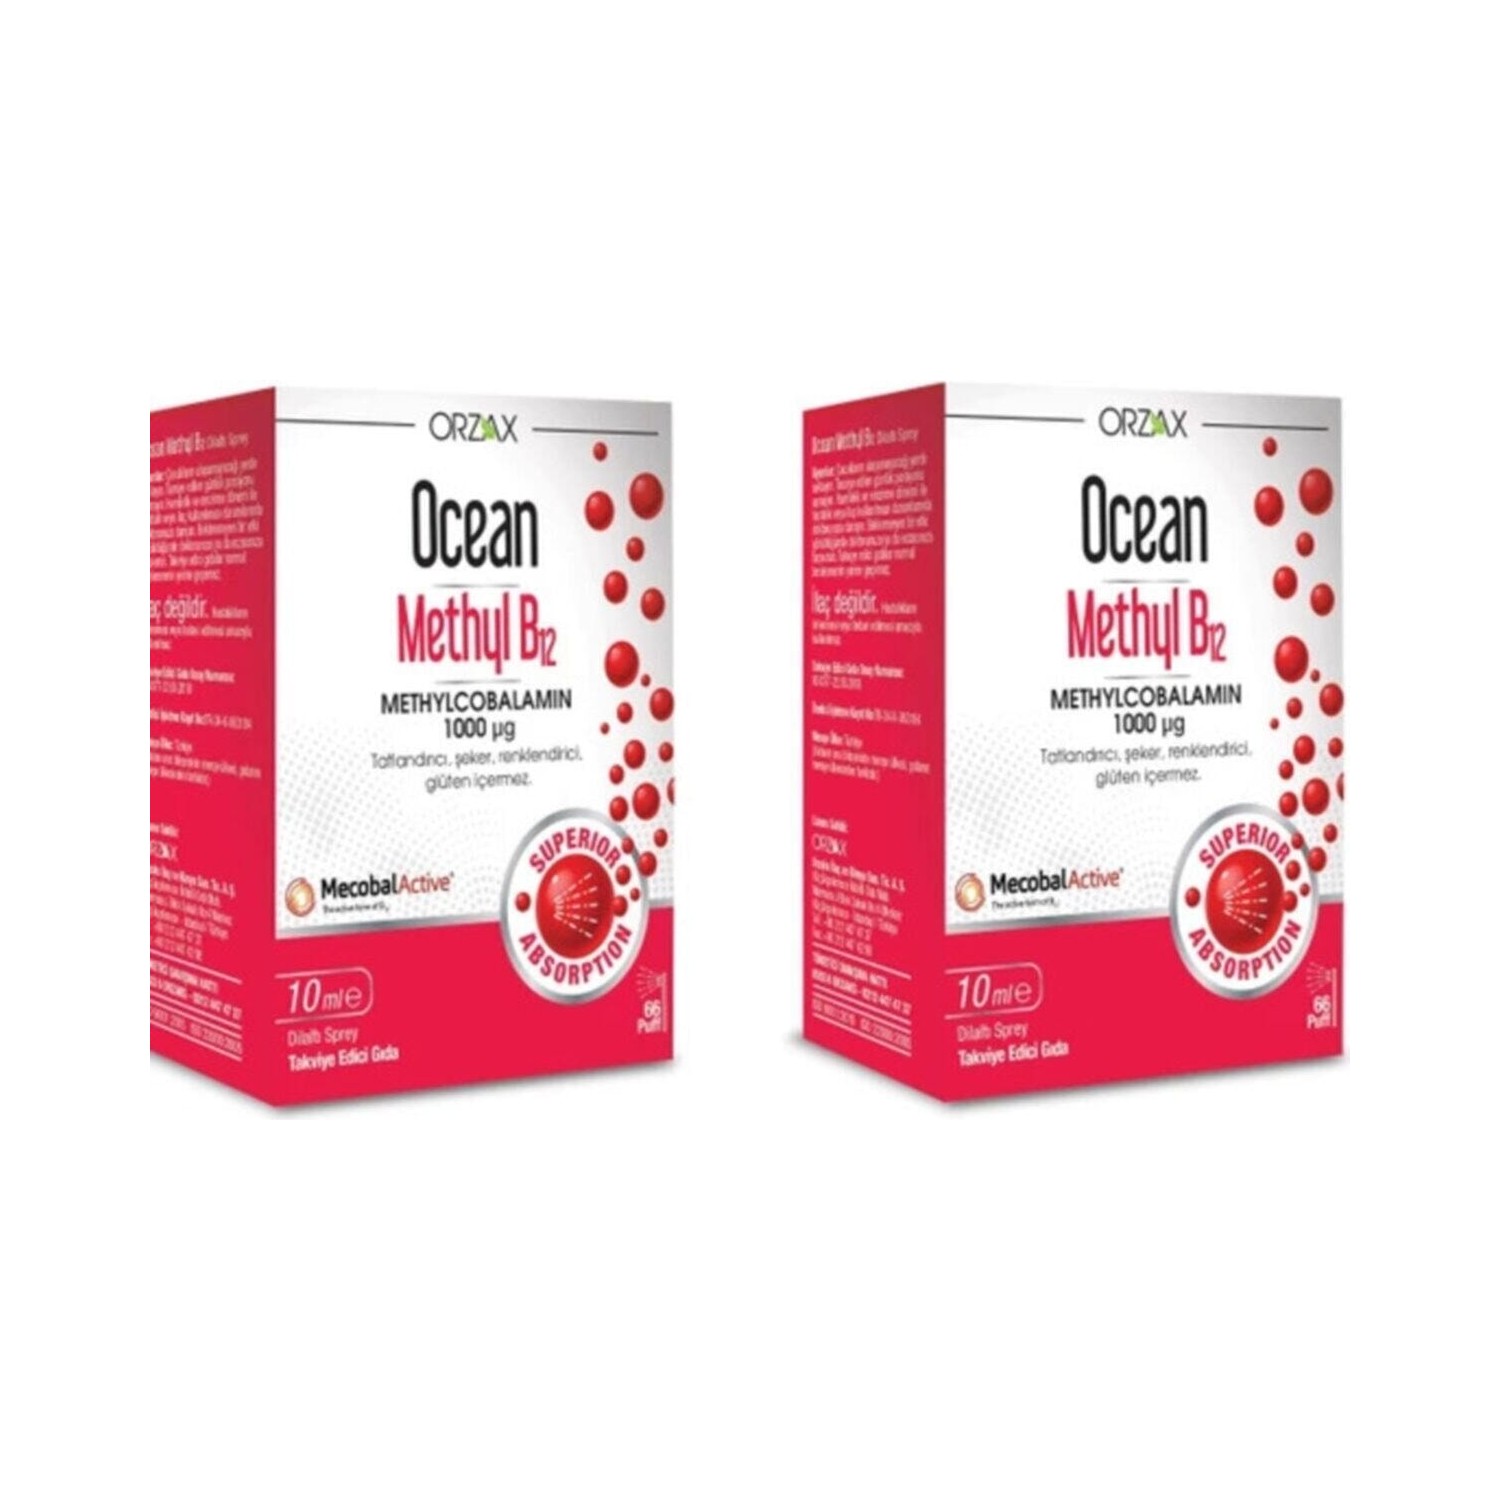 Метил B12 Ocean 1000 мг, 2 упаковки по 10 мл цена и фото